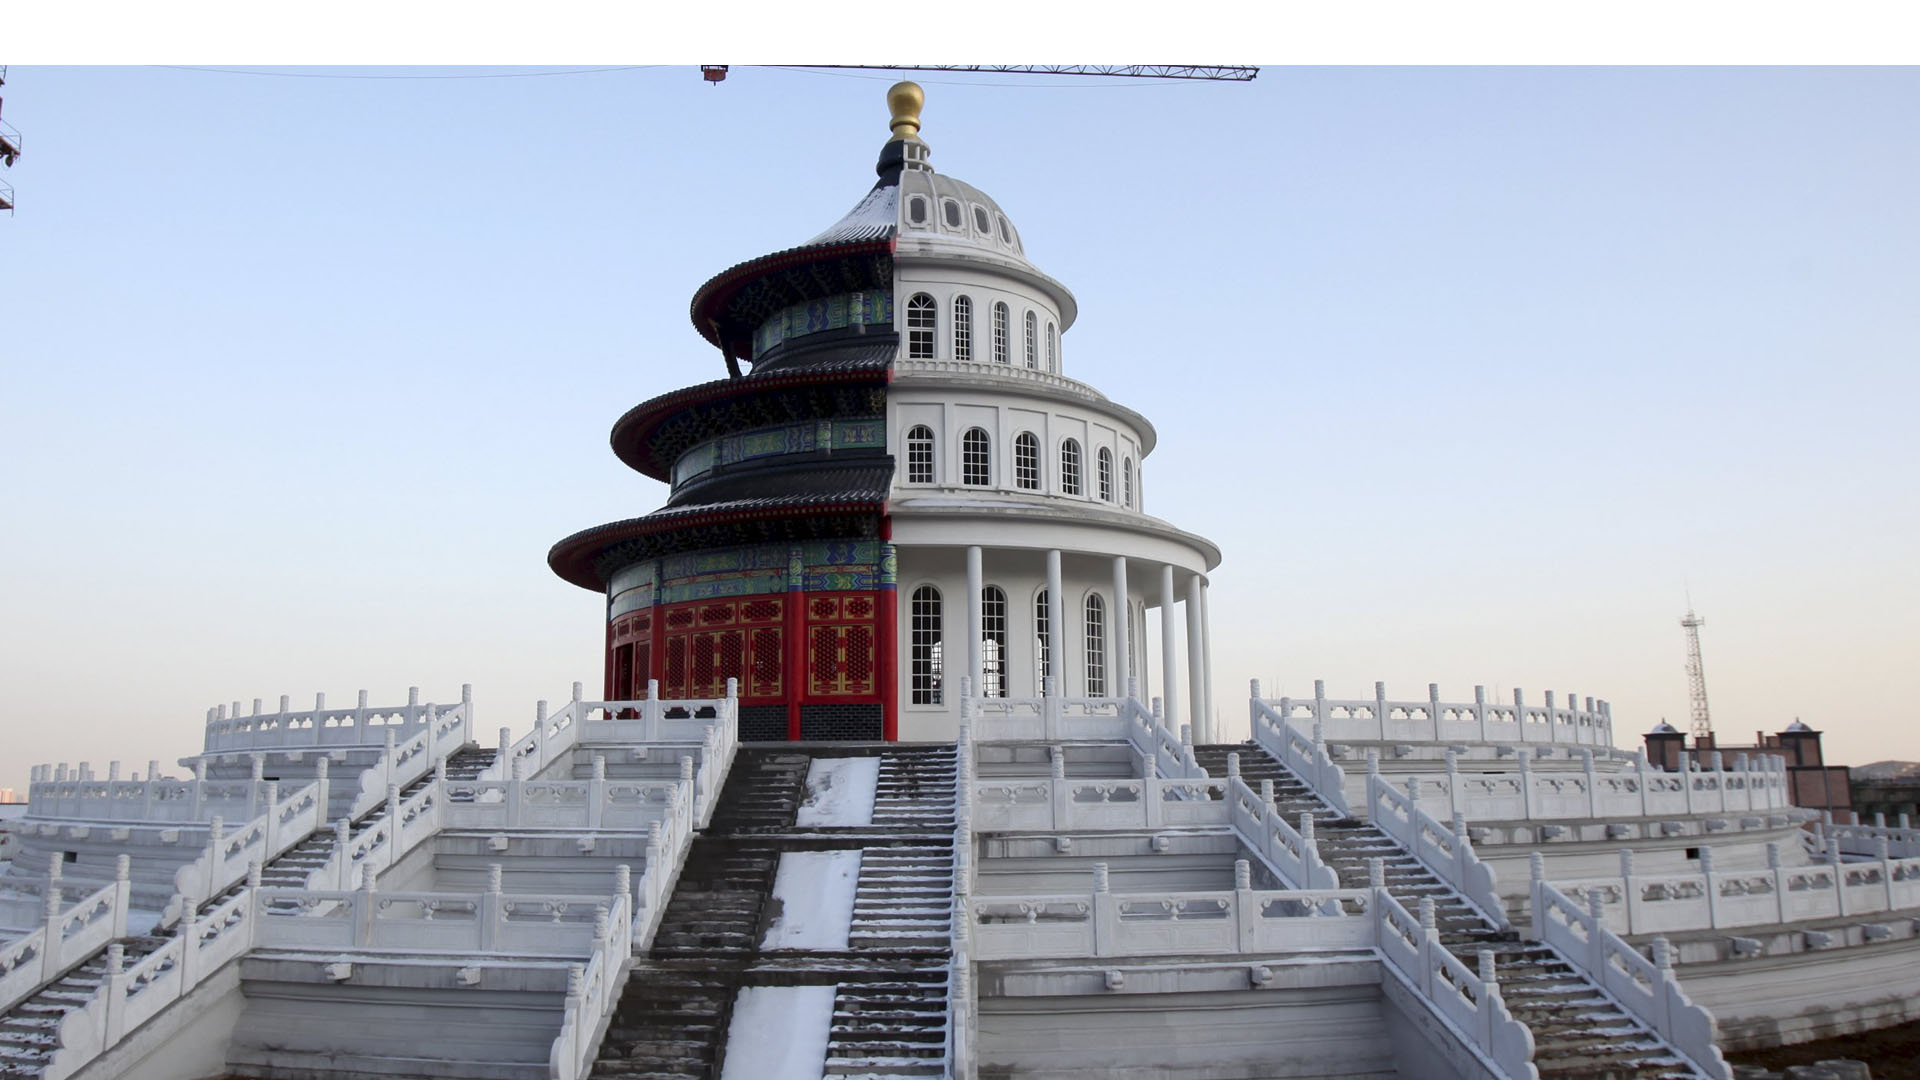 El estudio de cine New Great Wall International, en Shijiazhuang une al Capitolio de Estados Unidos con el Templo del Cielo de Pekín